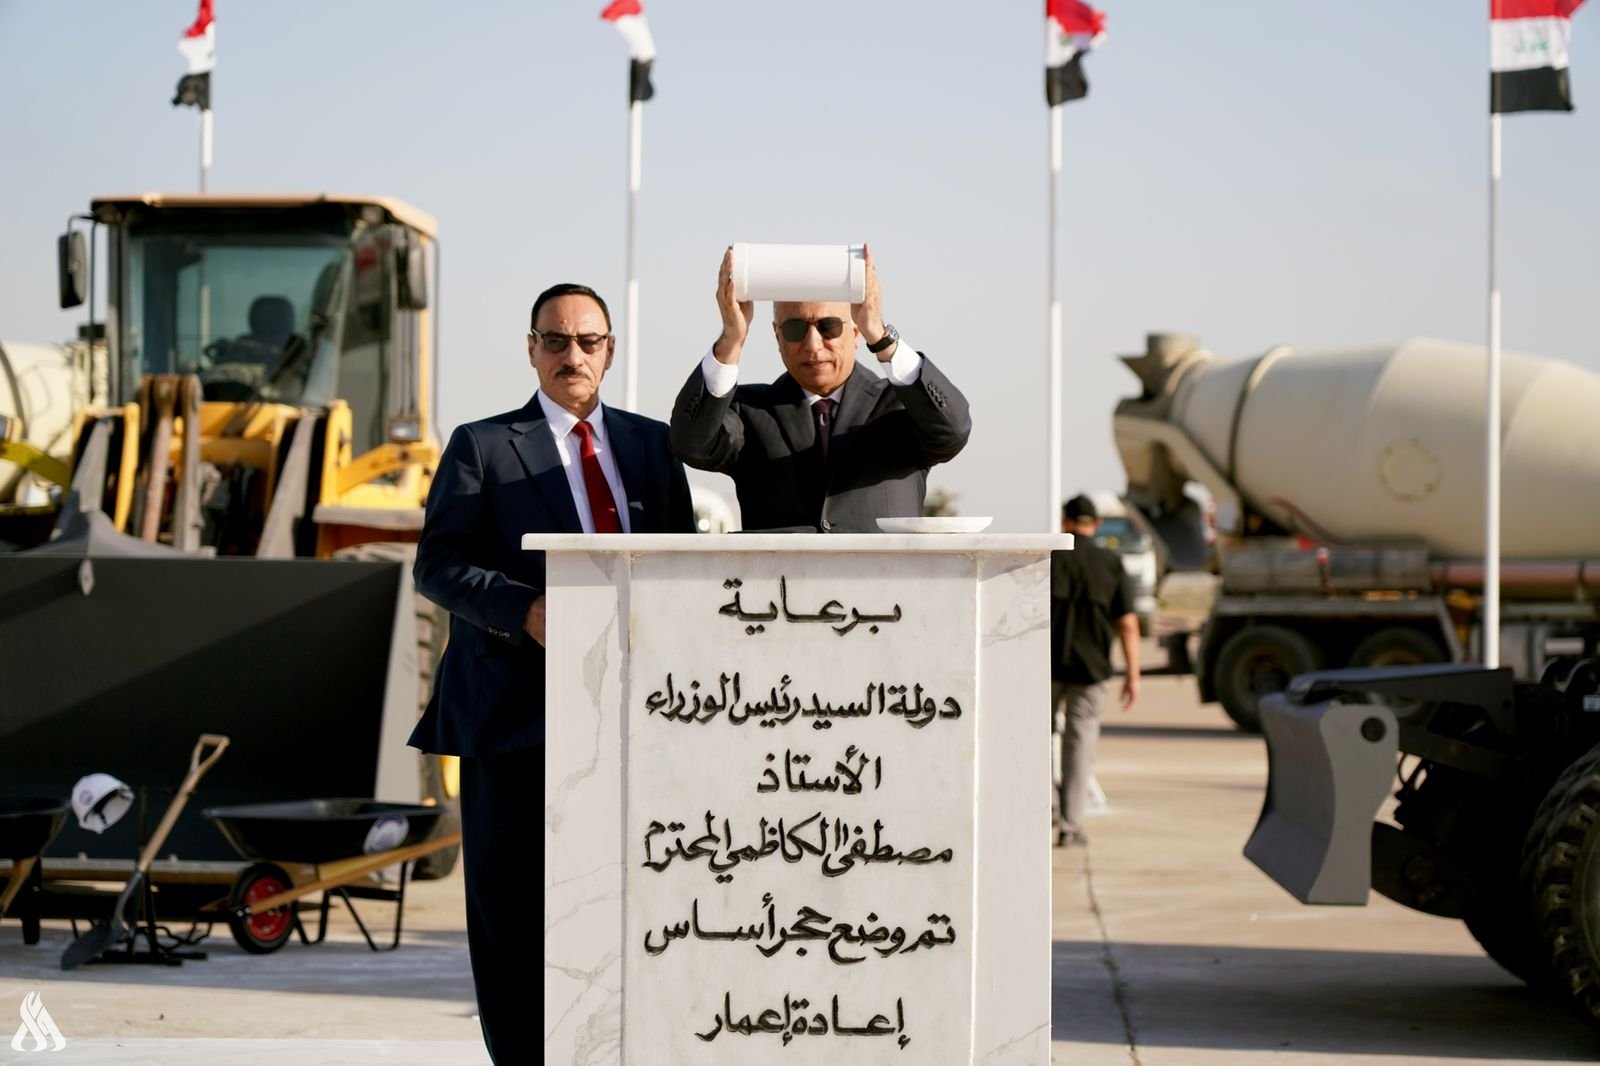 الكاظمي يضع حجر الأساس لمشروع إعادة تأهيل مطار الموصل  (واع)